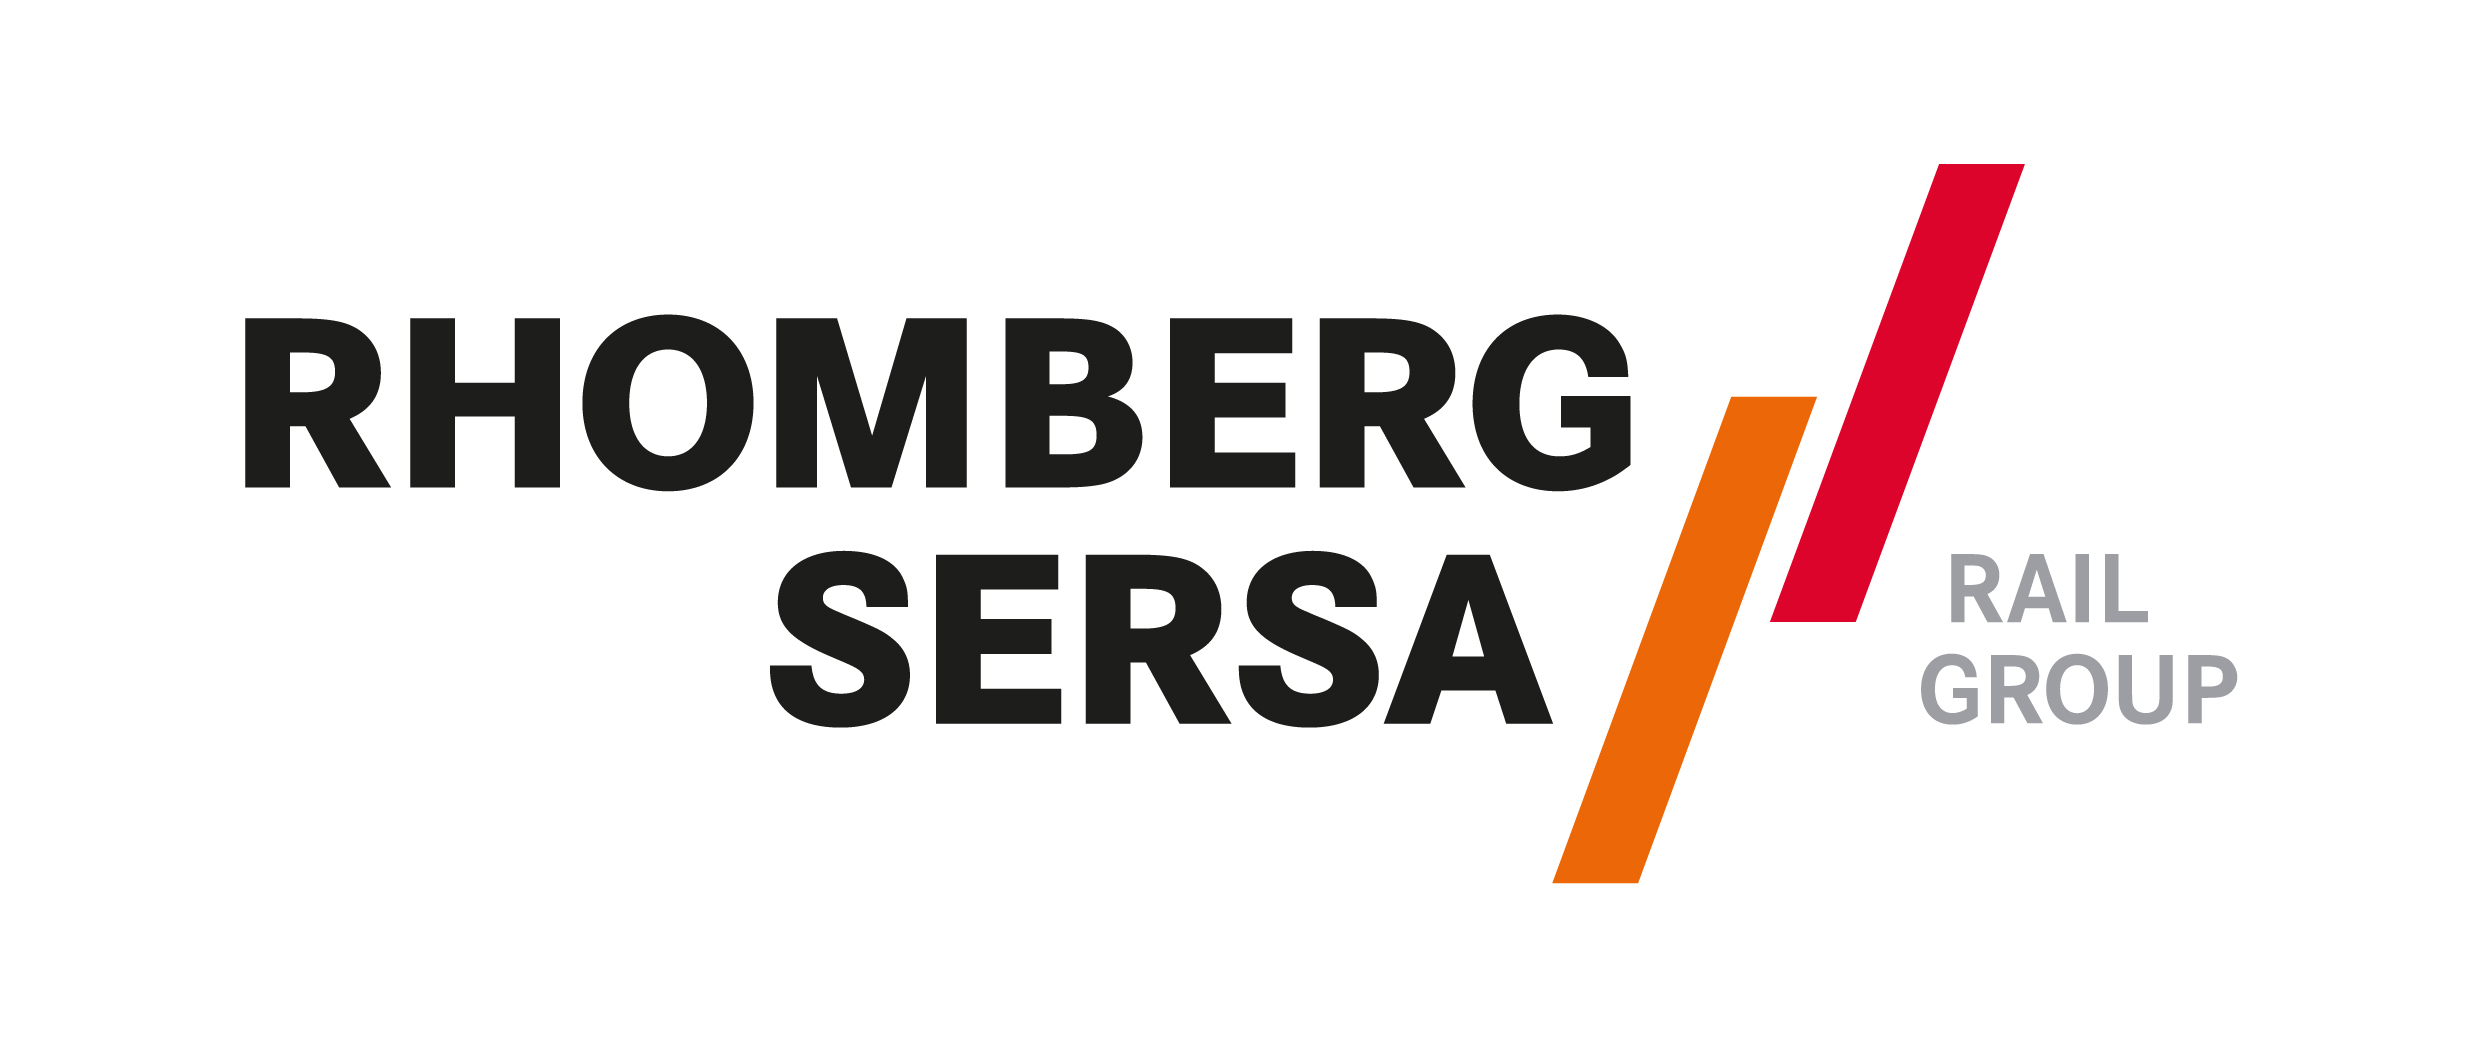 Logo_Rhomberg_Sersa_4C.JPG